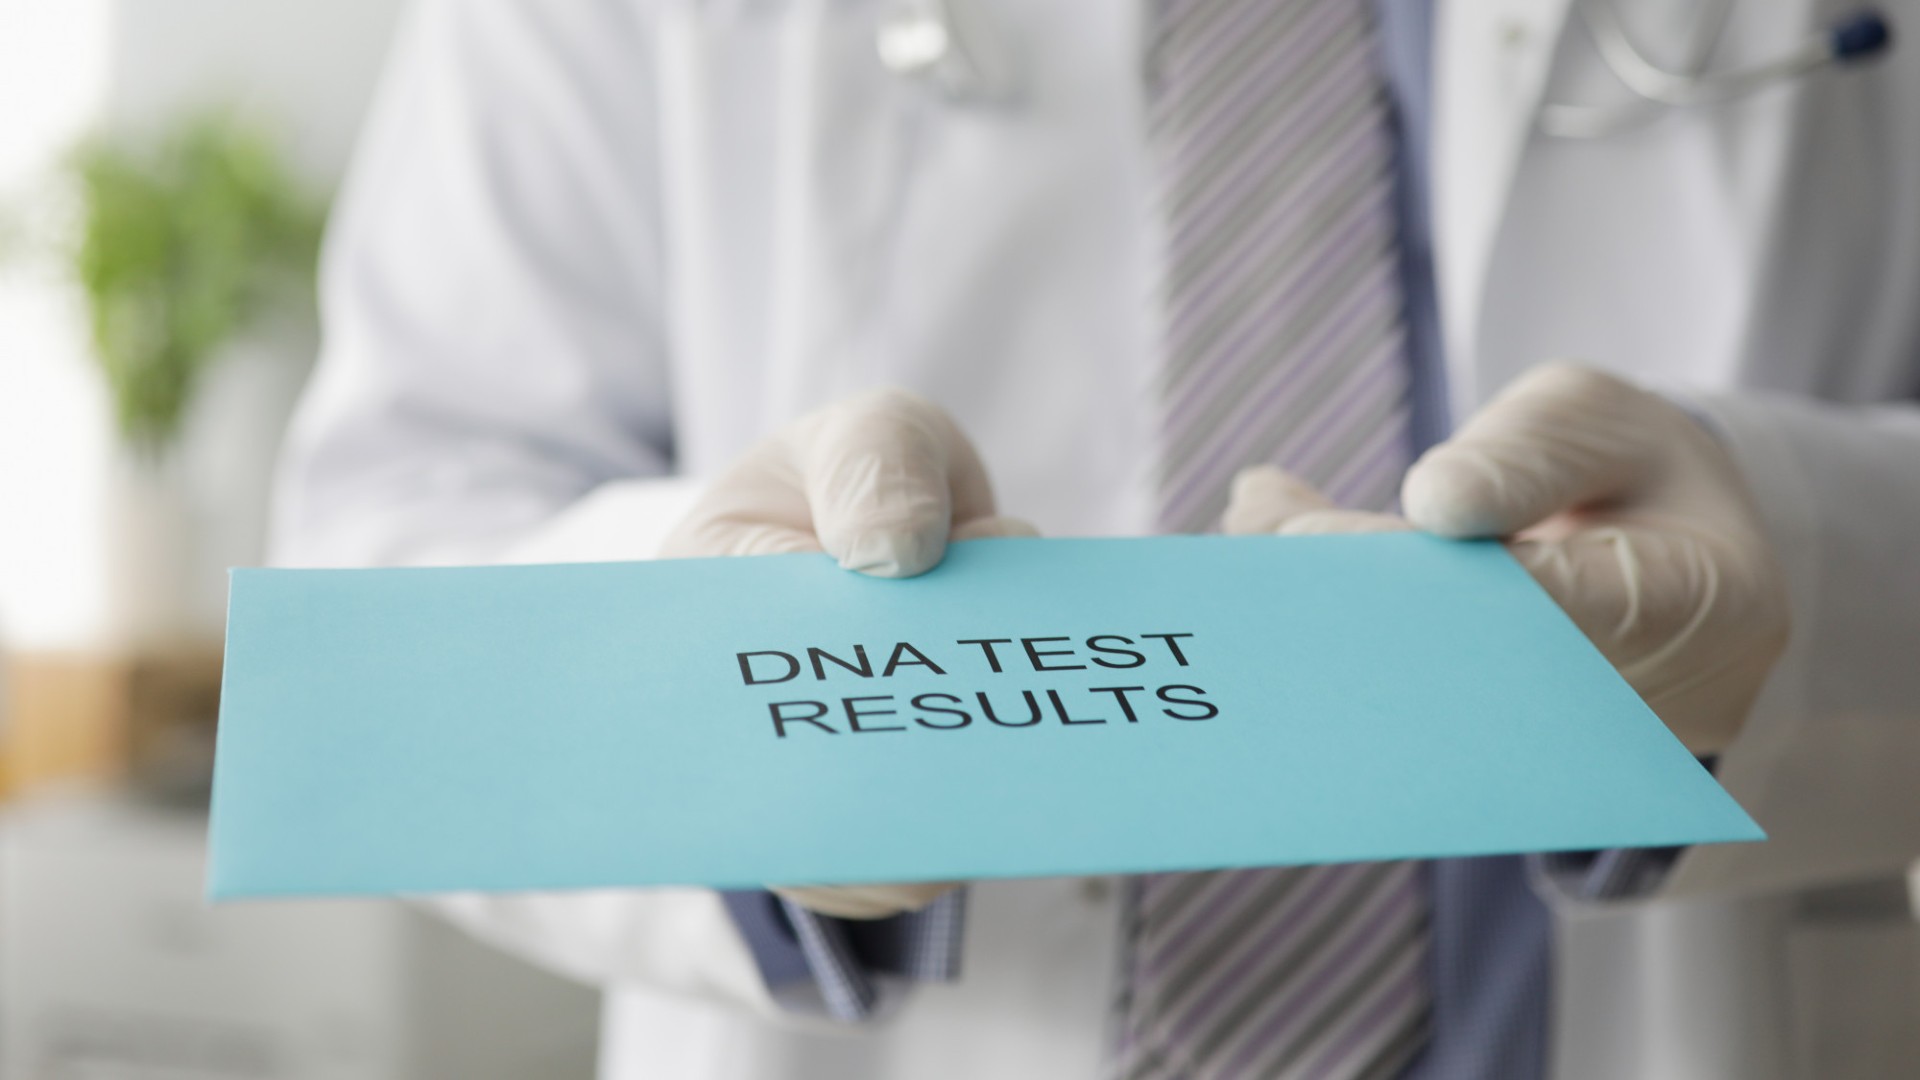 Foto de capa do artigo "Teste de DNA: como funciona? Quanto tempo para obter o resultado?"